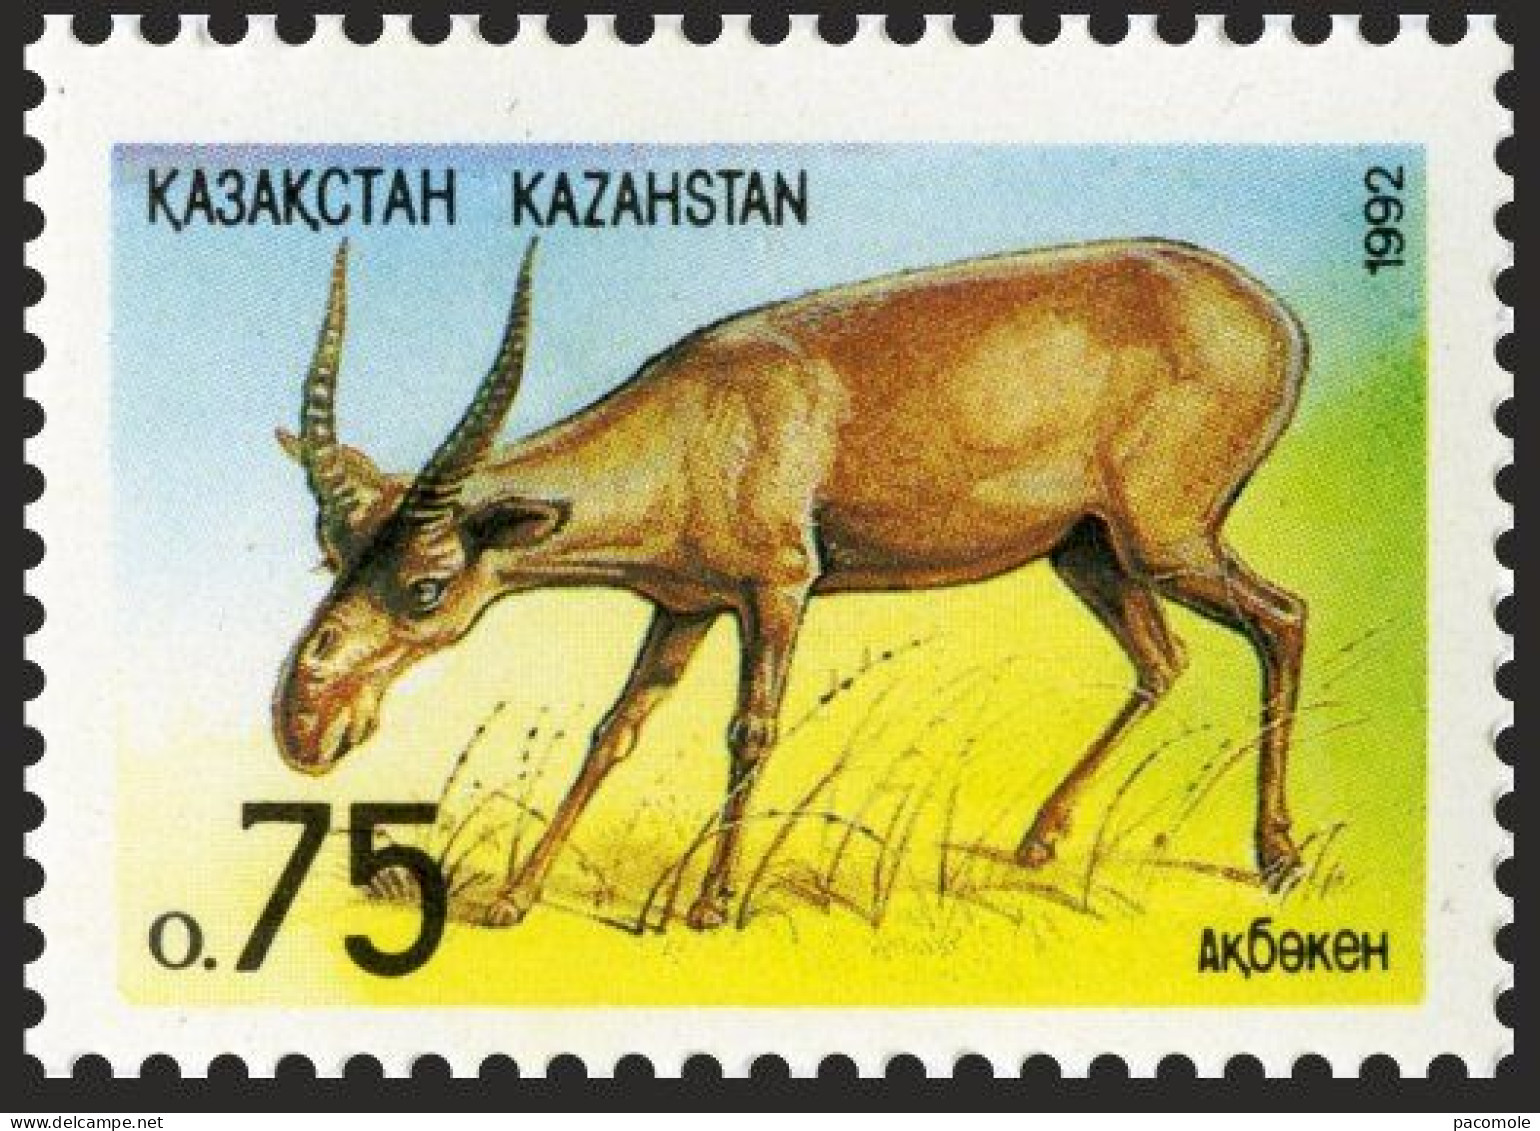 Kazakhstan 1992 - Faune - Kazakhstan